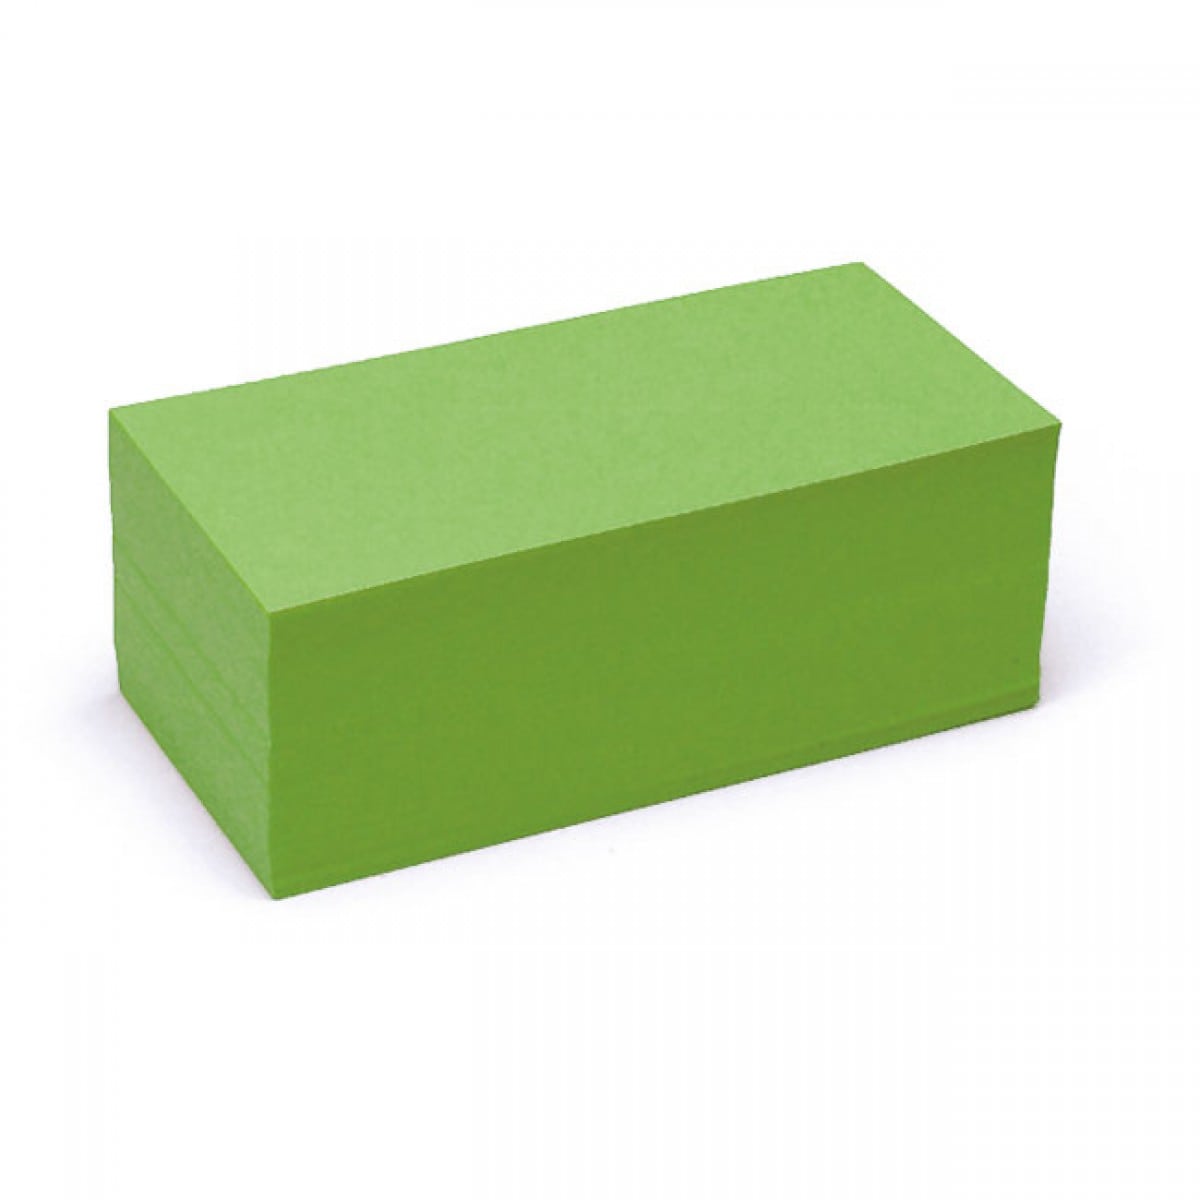 Pin-It Cards, rectangular, 500 sheets, single colors- 4 grün